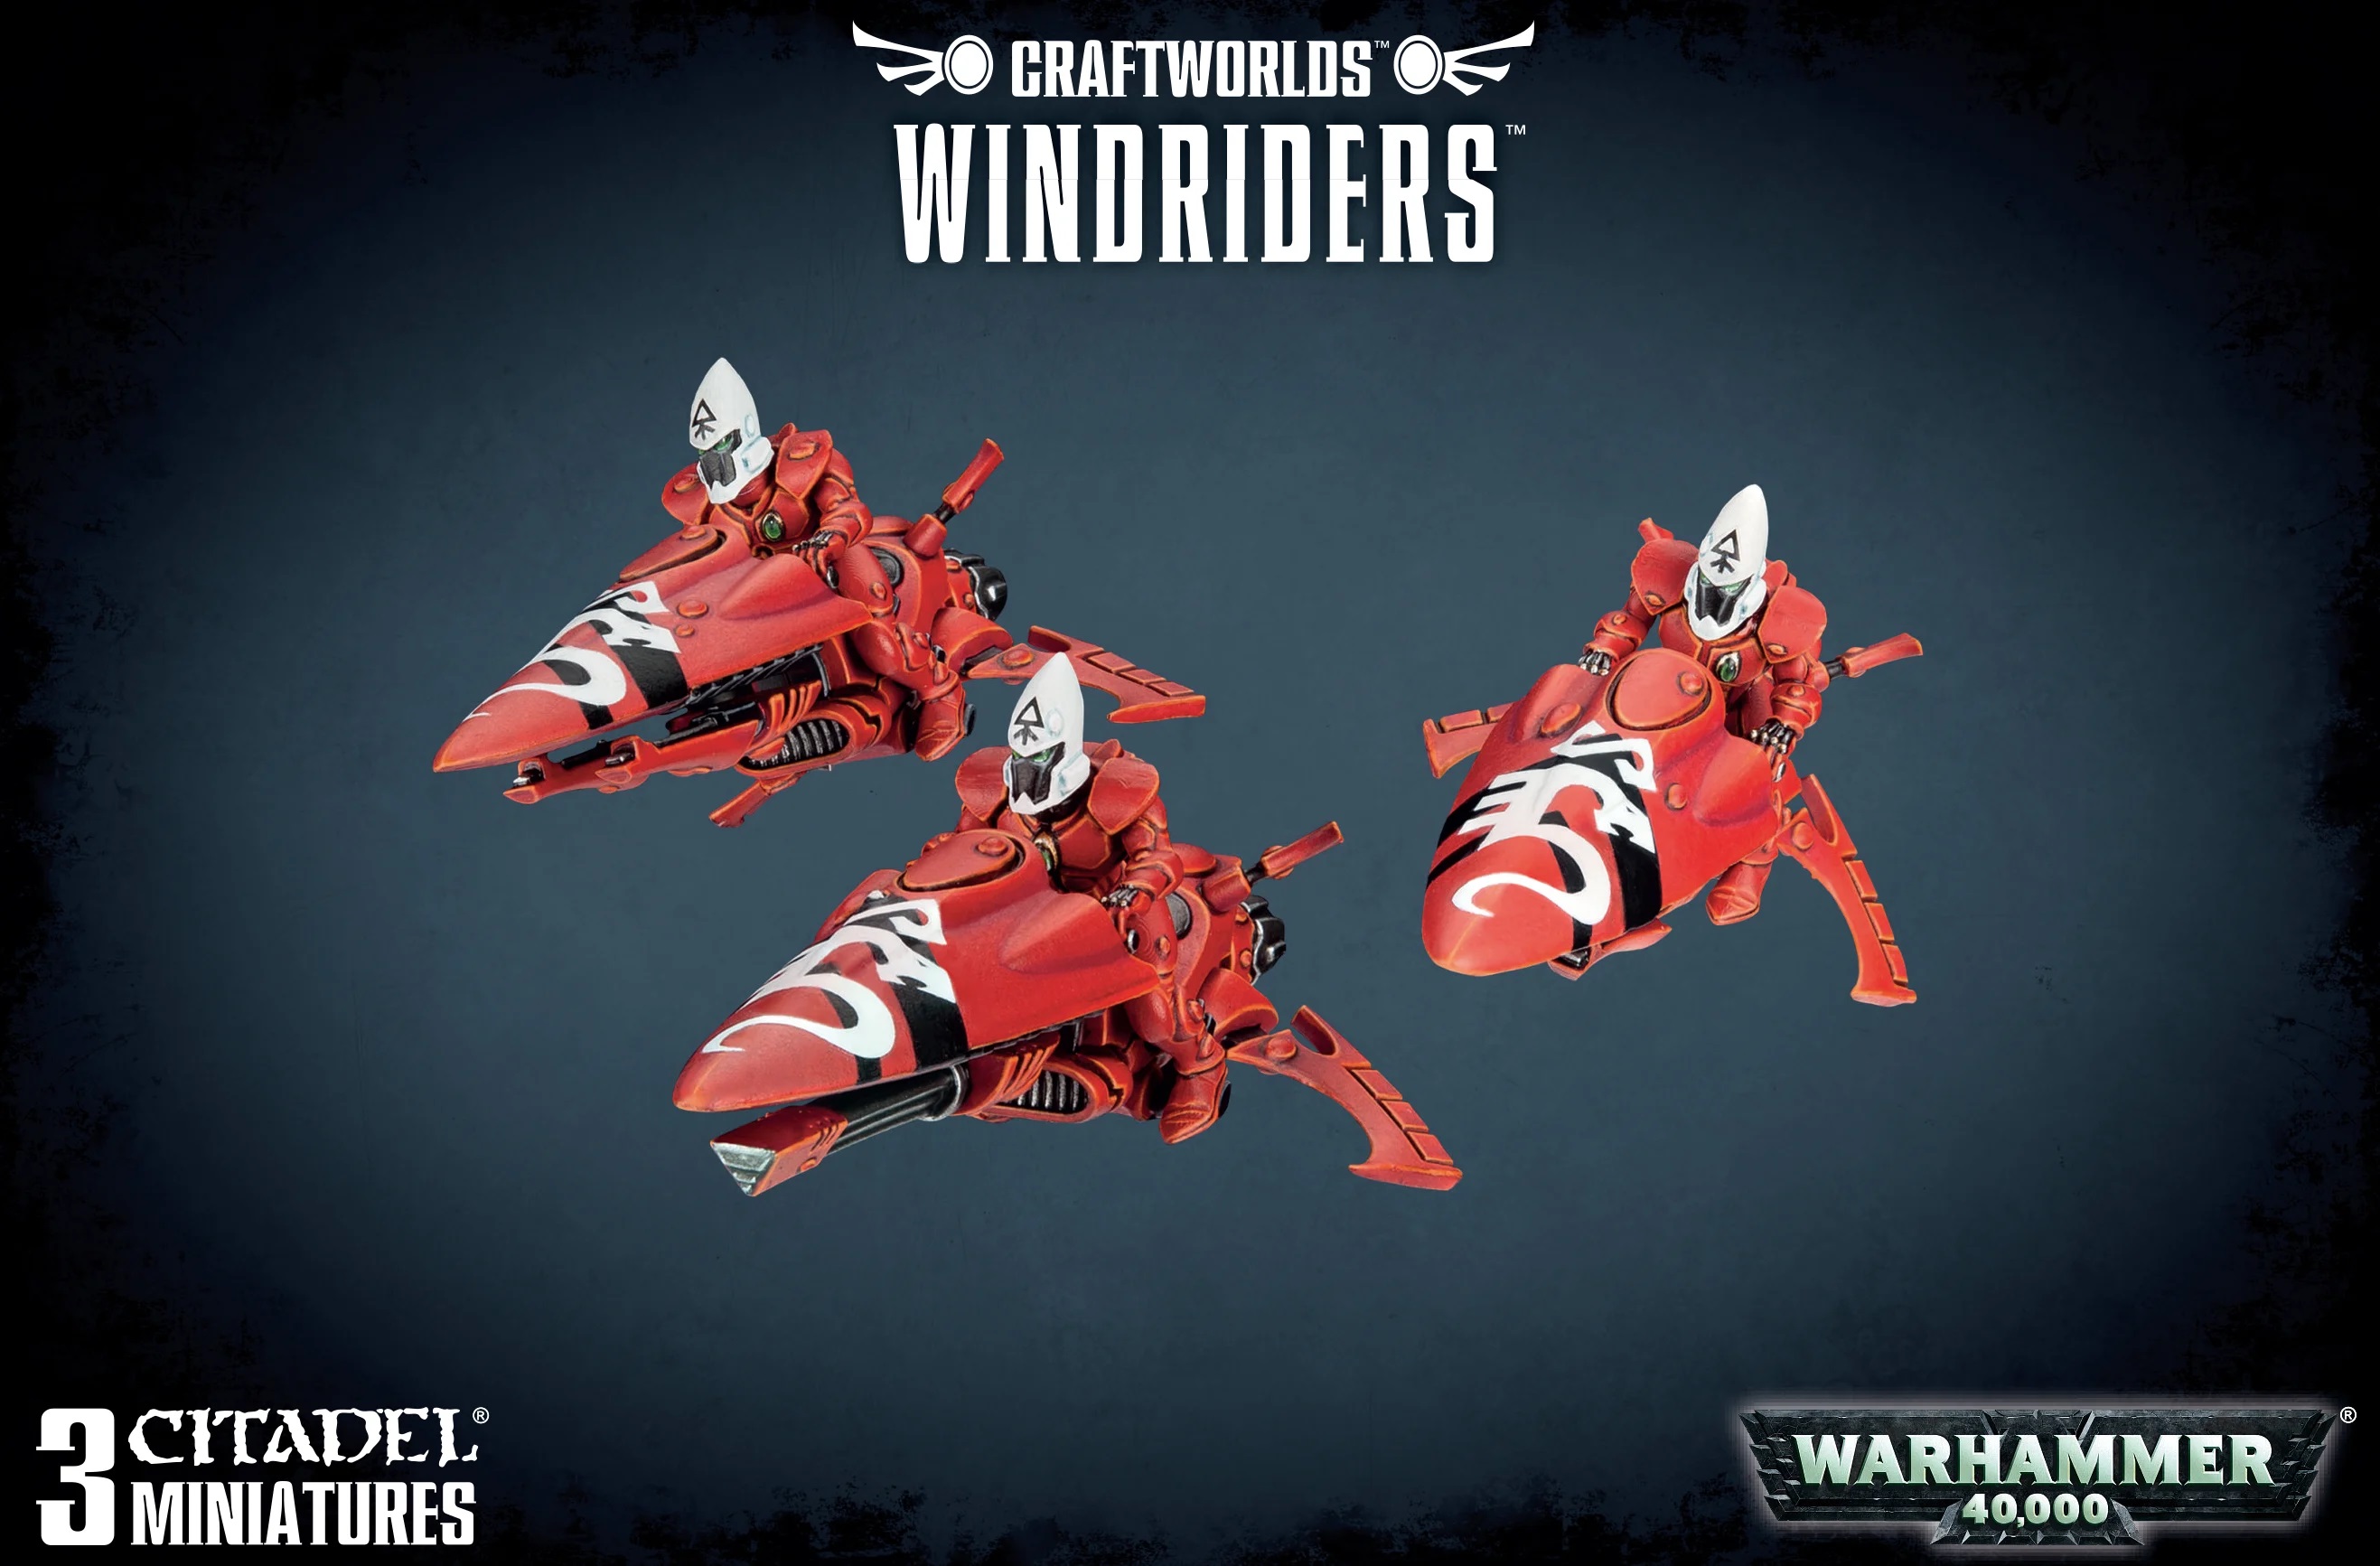 Craftworlds Windriders